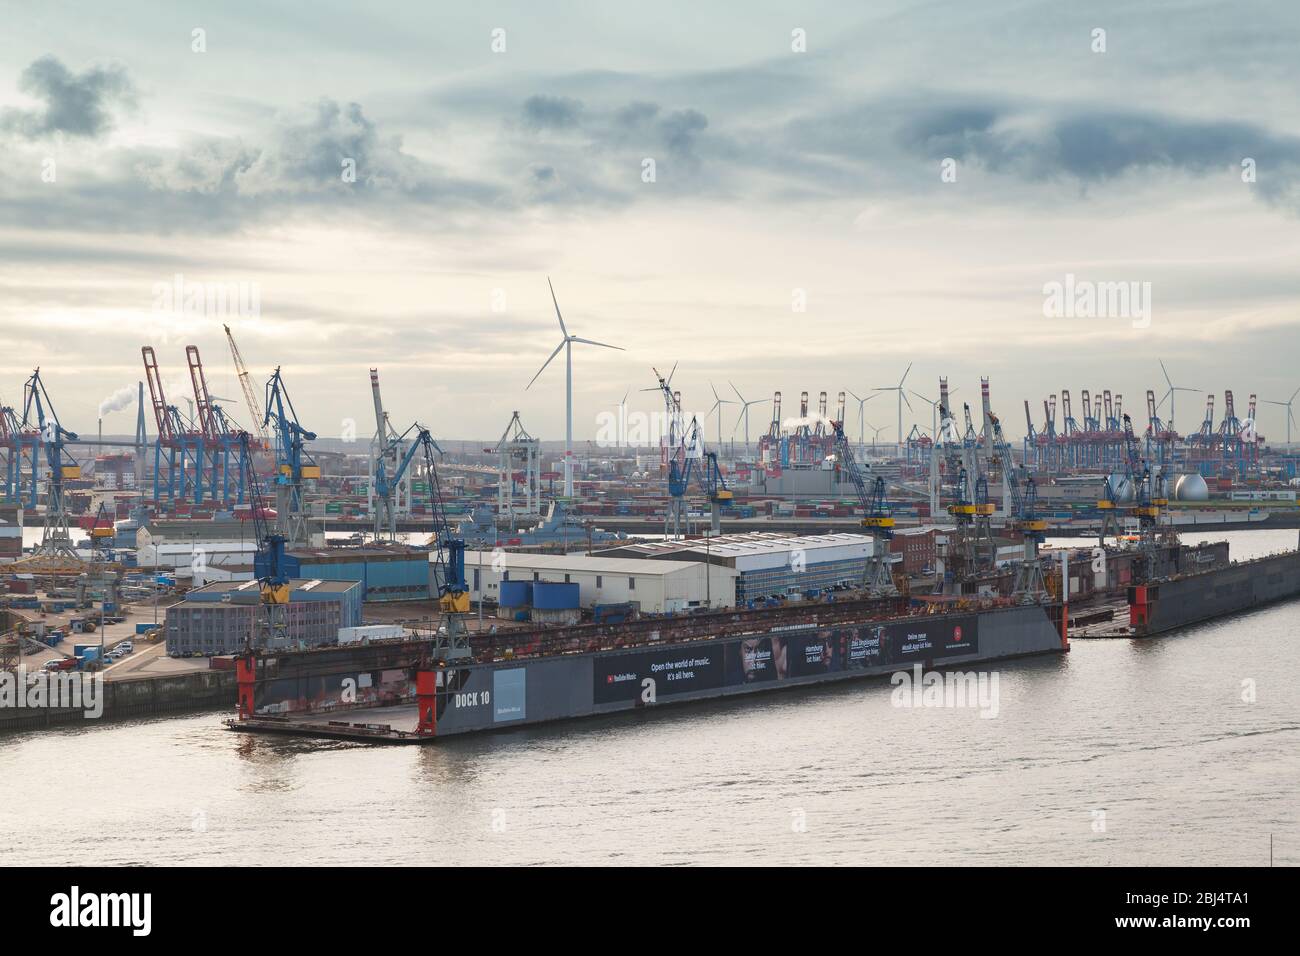 Hambourg, Allemagne - 26 novembre 2018 : des quais flottants et des navires sont sur la rivière Elbe dans le port de Hambourg Banque D'Images